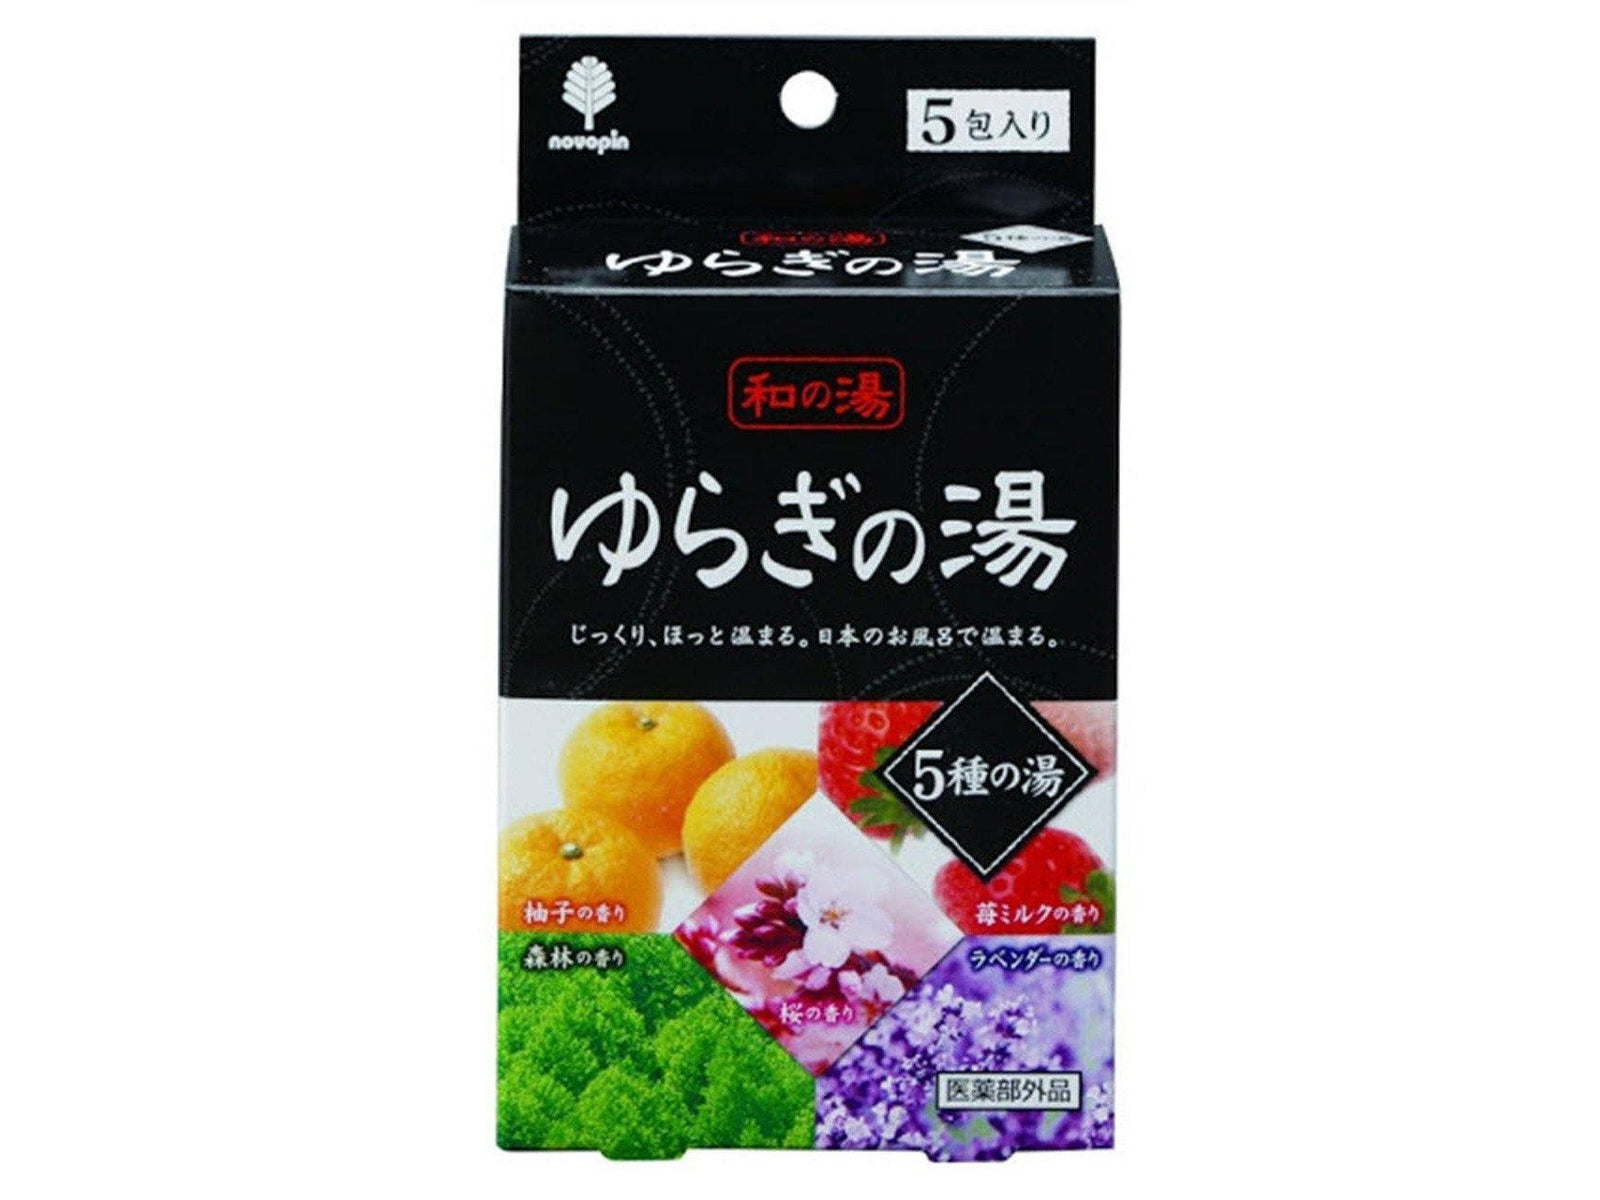 Yuragi no Yu Bath Salts Variety Pack